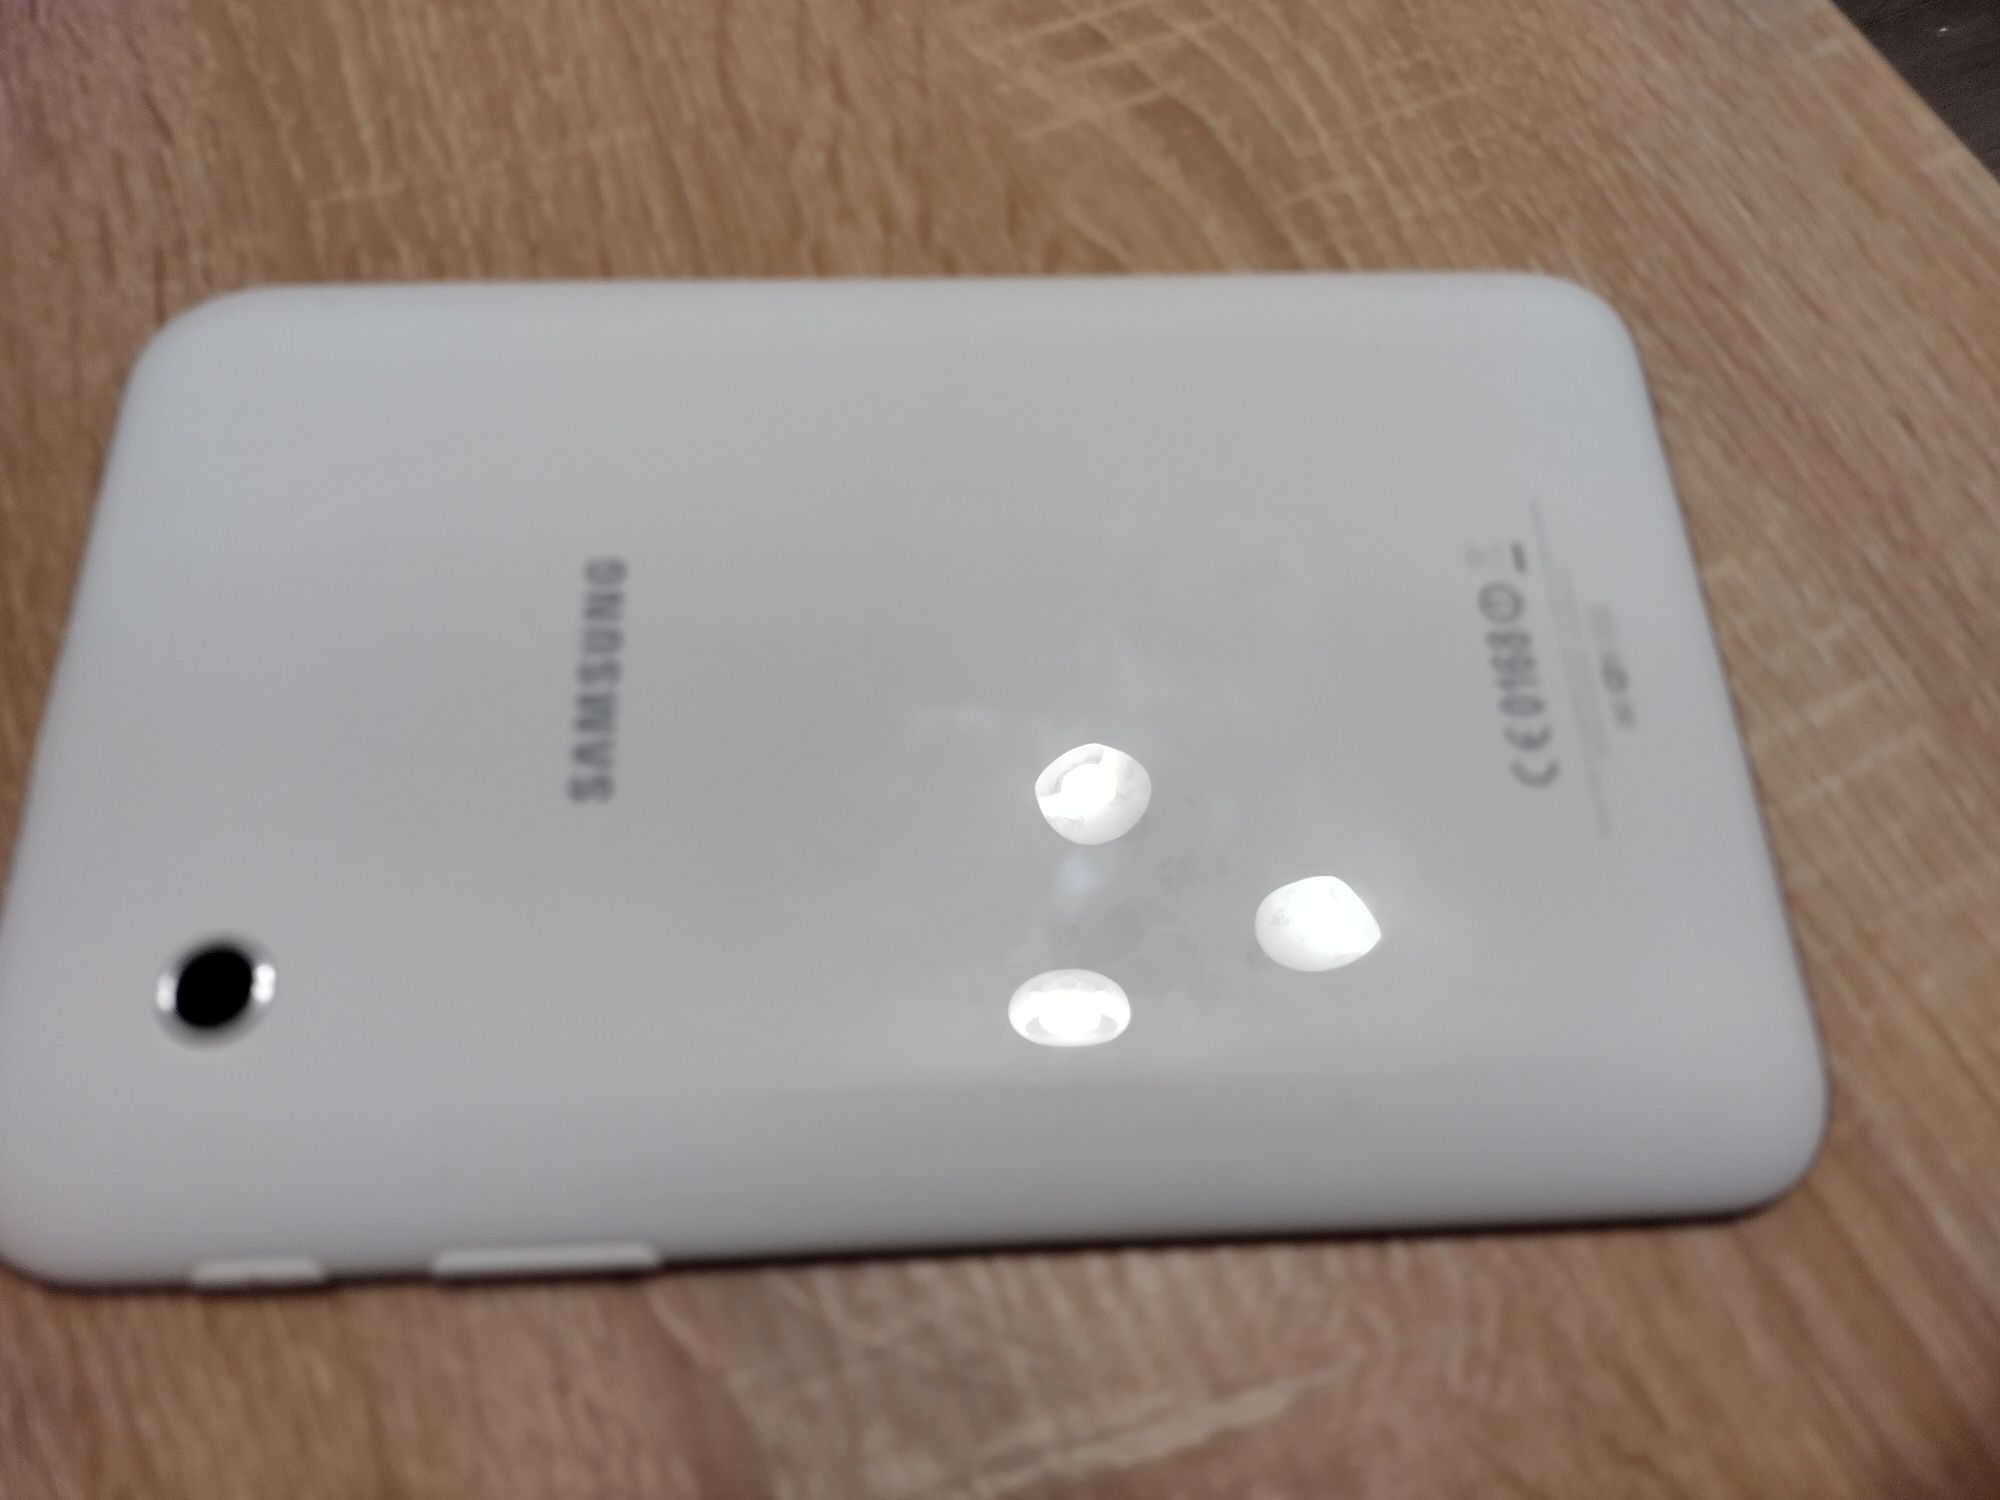 Samsung Galaxy tab 2 7.0